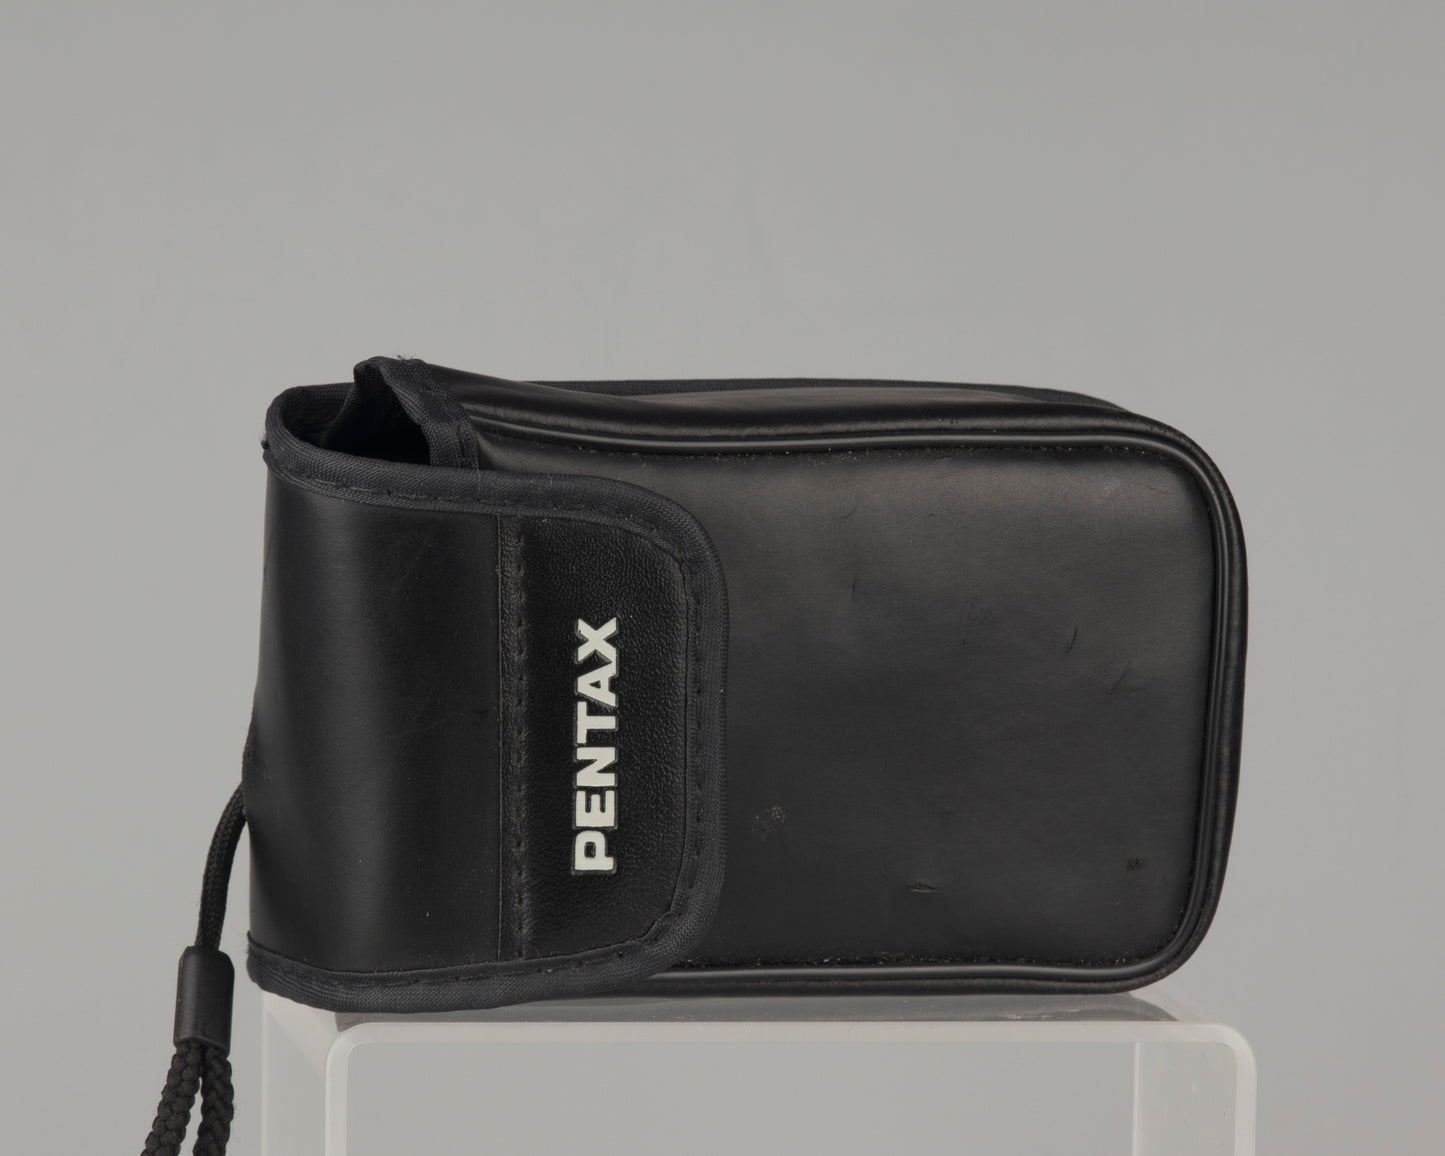 Pentax PC-55 35mm camera